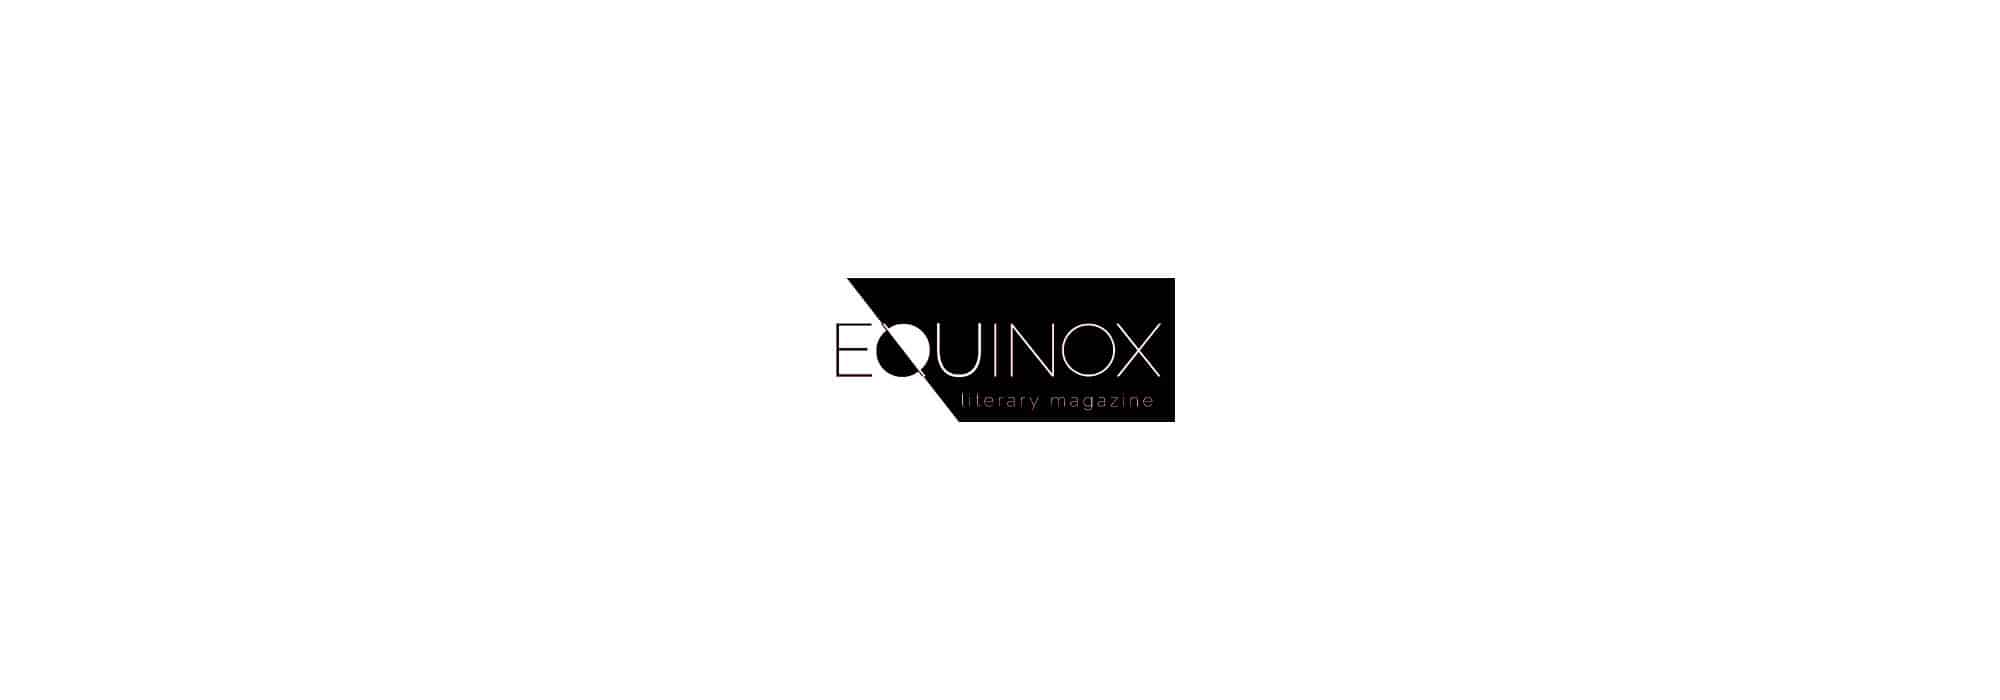 Equinox Logo - Equinox Launch – Central Arkansas Library System